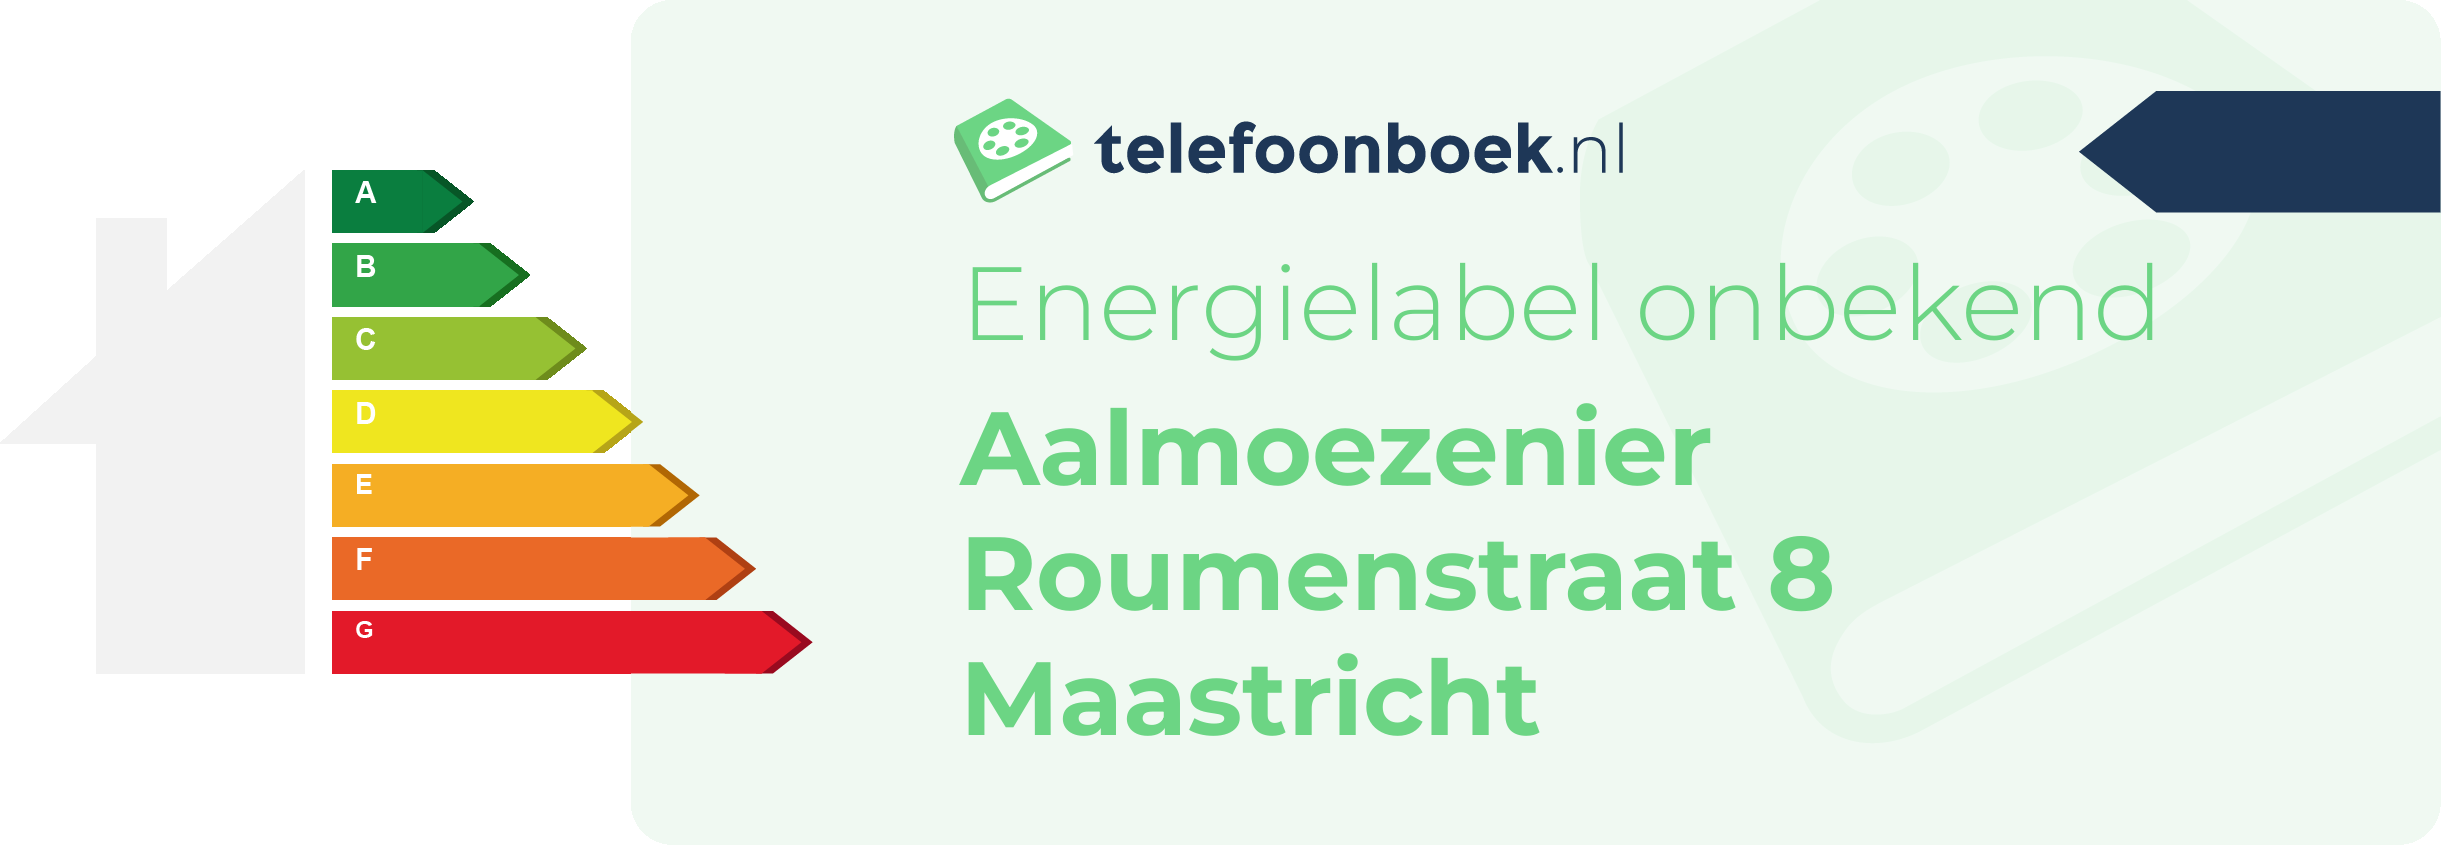 Energielabel Aalmoezenier Roumenstraat 8 Maastricht